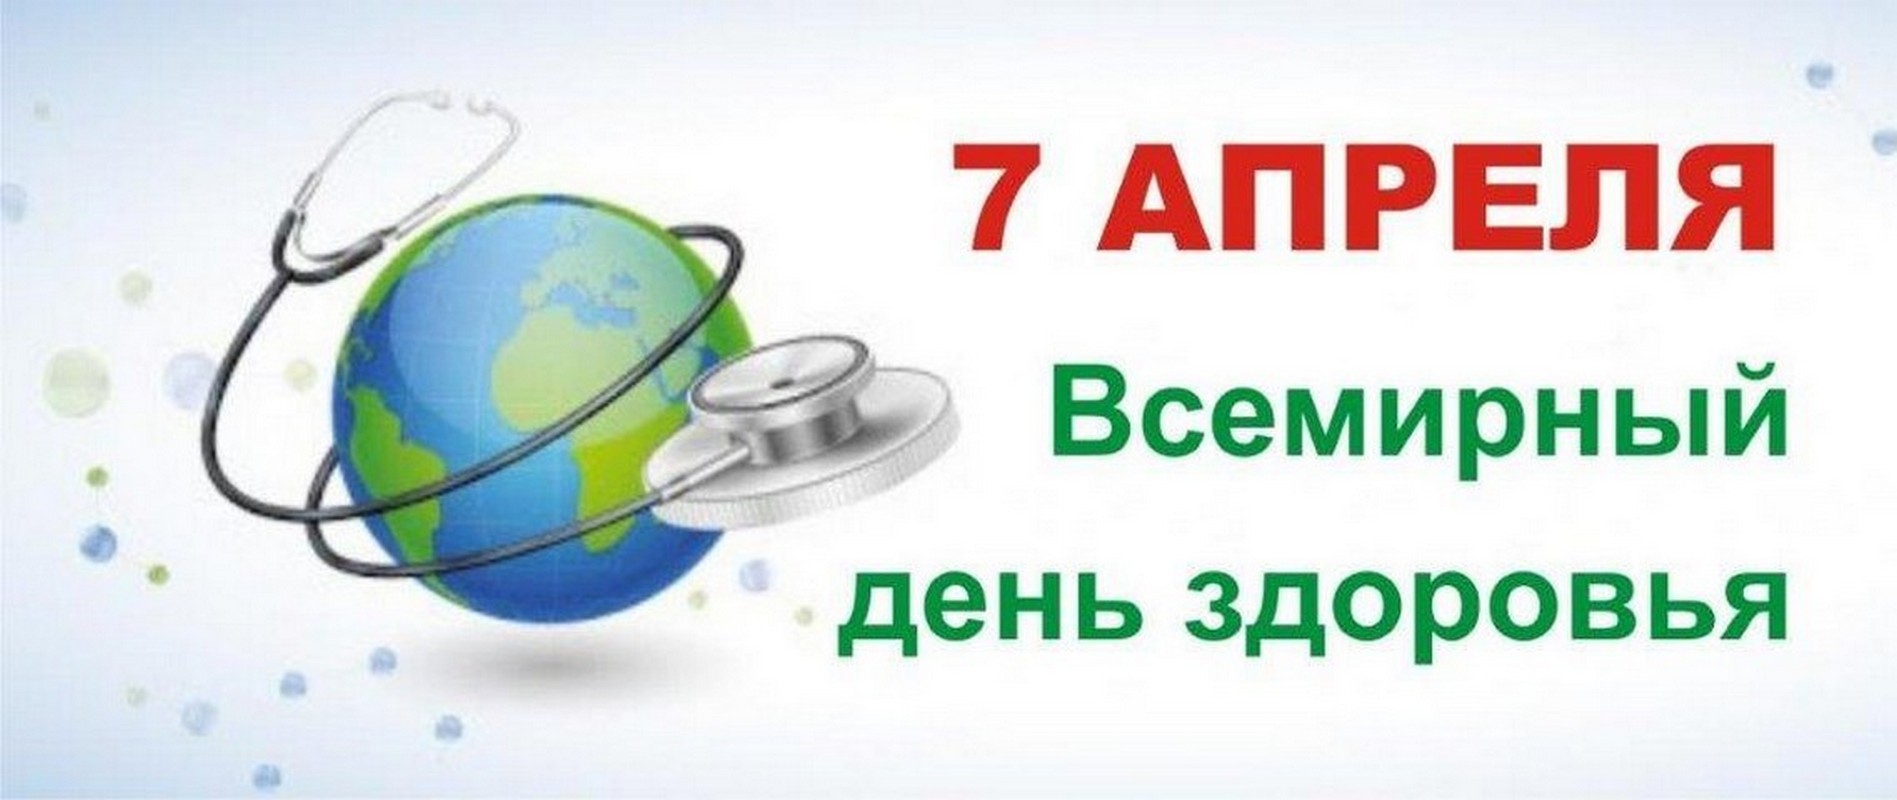 Всемирный день здоровья в россии. 7 Апреля Всемирный день здоровья. Всемирныйденьздорлвья. Всемирныц Жень здоровье. 7 Апрелявсемирнвй день здоровья.